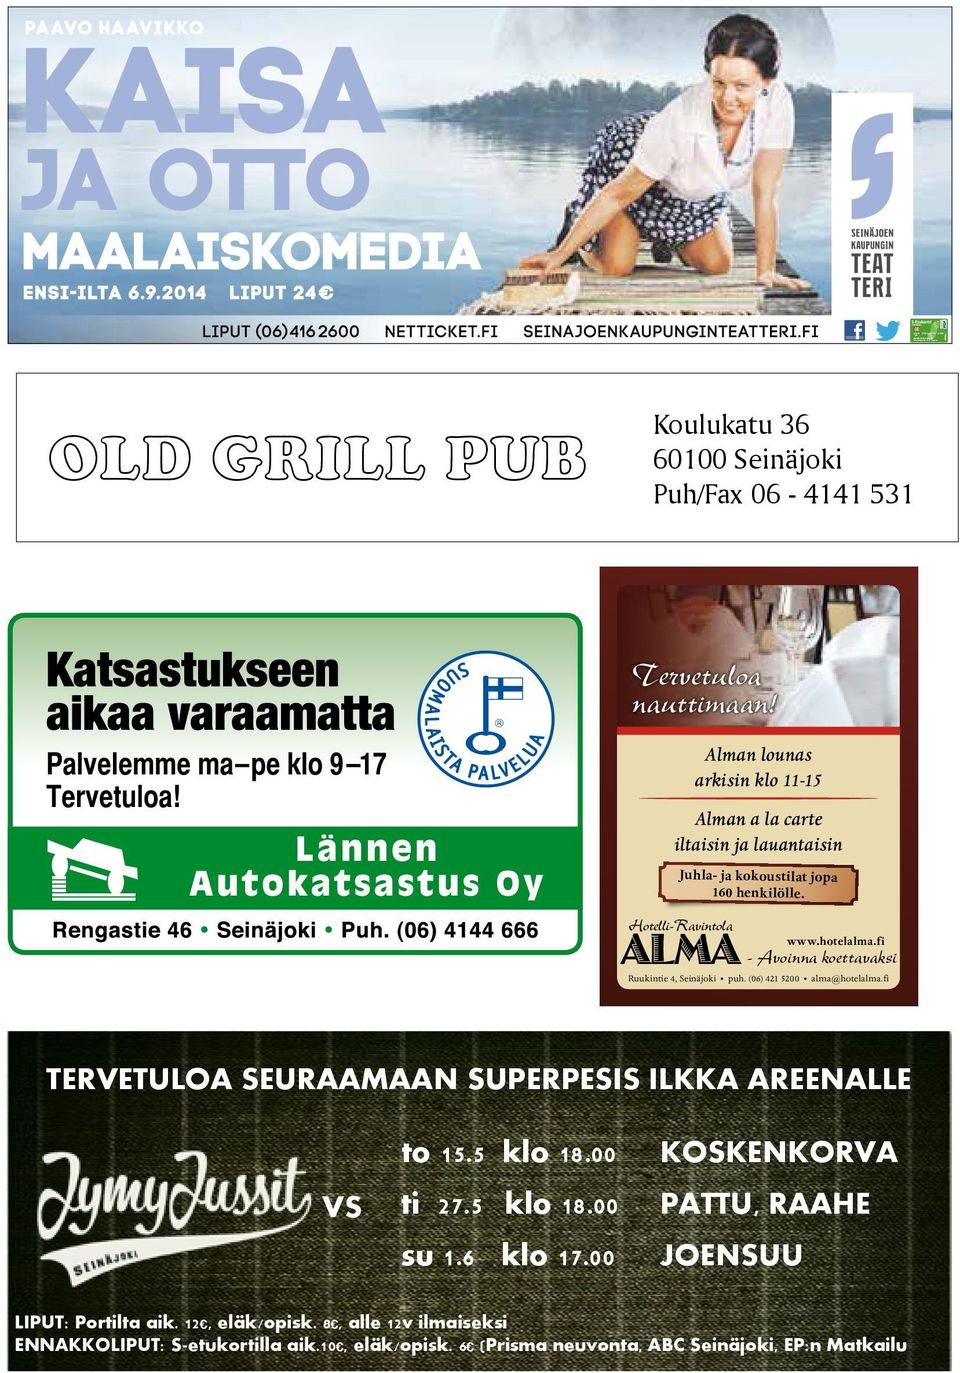 fi - Avoinna koettavaksi Ruukintie 4, Seinäjoki puh. (06) 421 5200 alma@hotelalma.fi TERVETULOA SEURAAMAAN SUPERPESIS ILKKA AREENALLE VS to 15.5 klo 18.